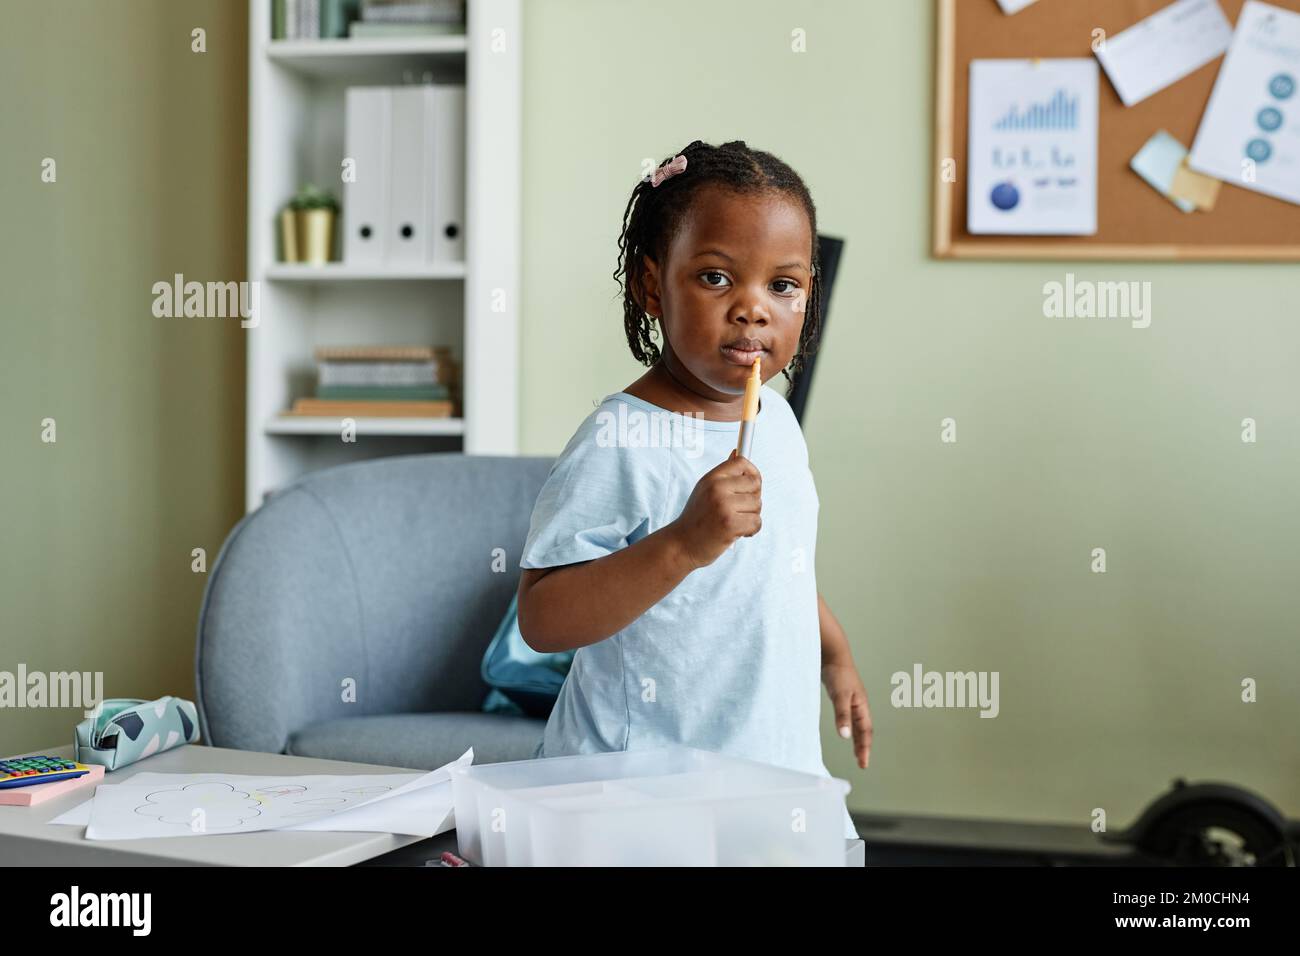 Portrait d'une jolie fille noire tenant un crayon et regardant l'appareil photo tout en dessinant des photos sur un petit bureau Banque D'Images